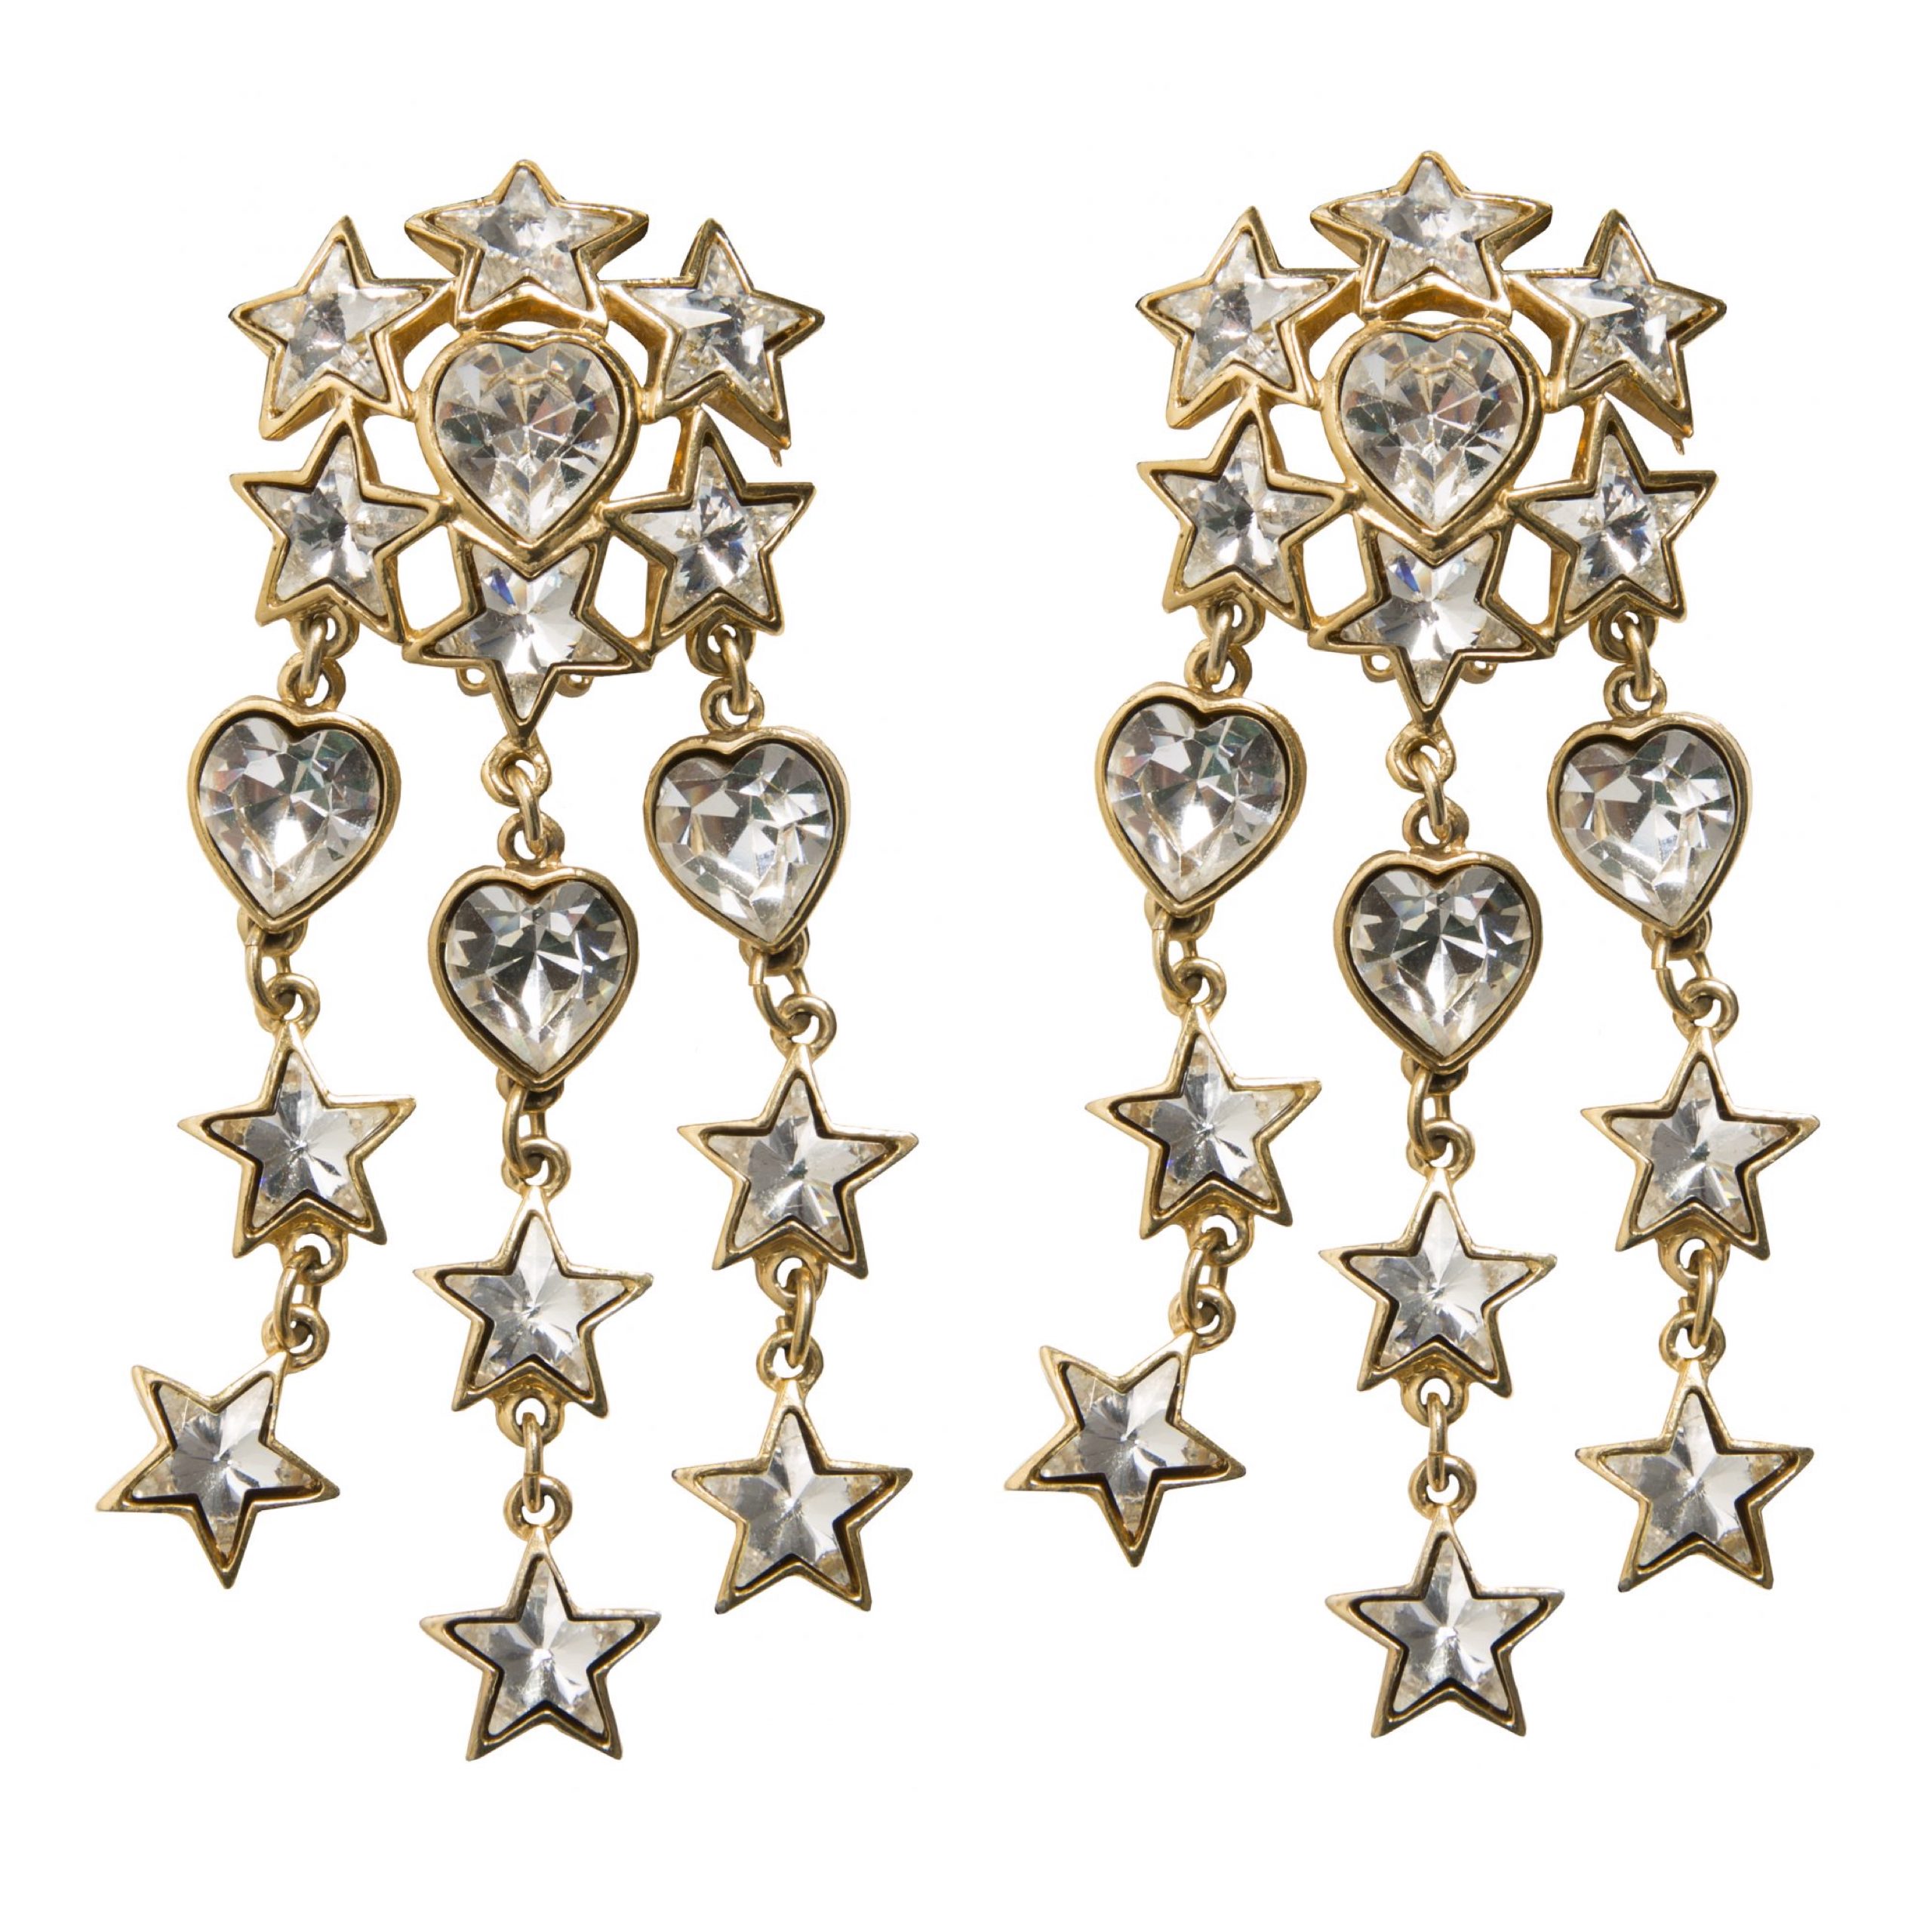 Vintage star chandelier crystal earrings